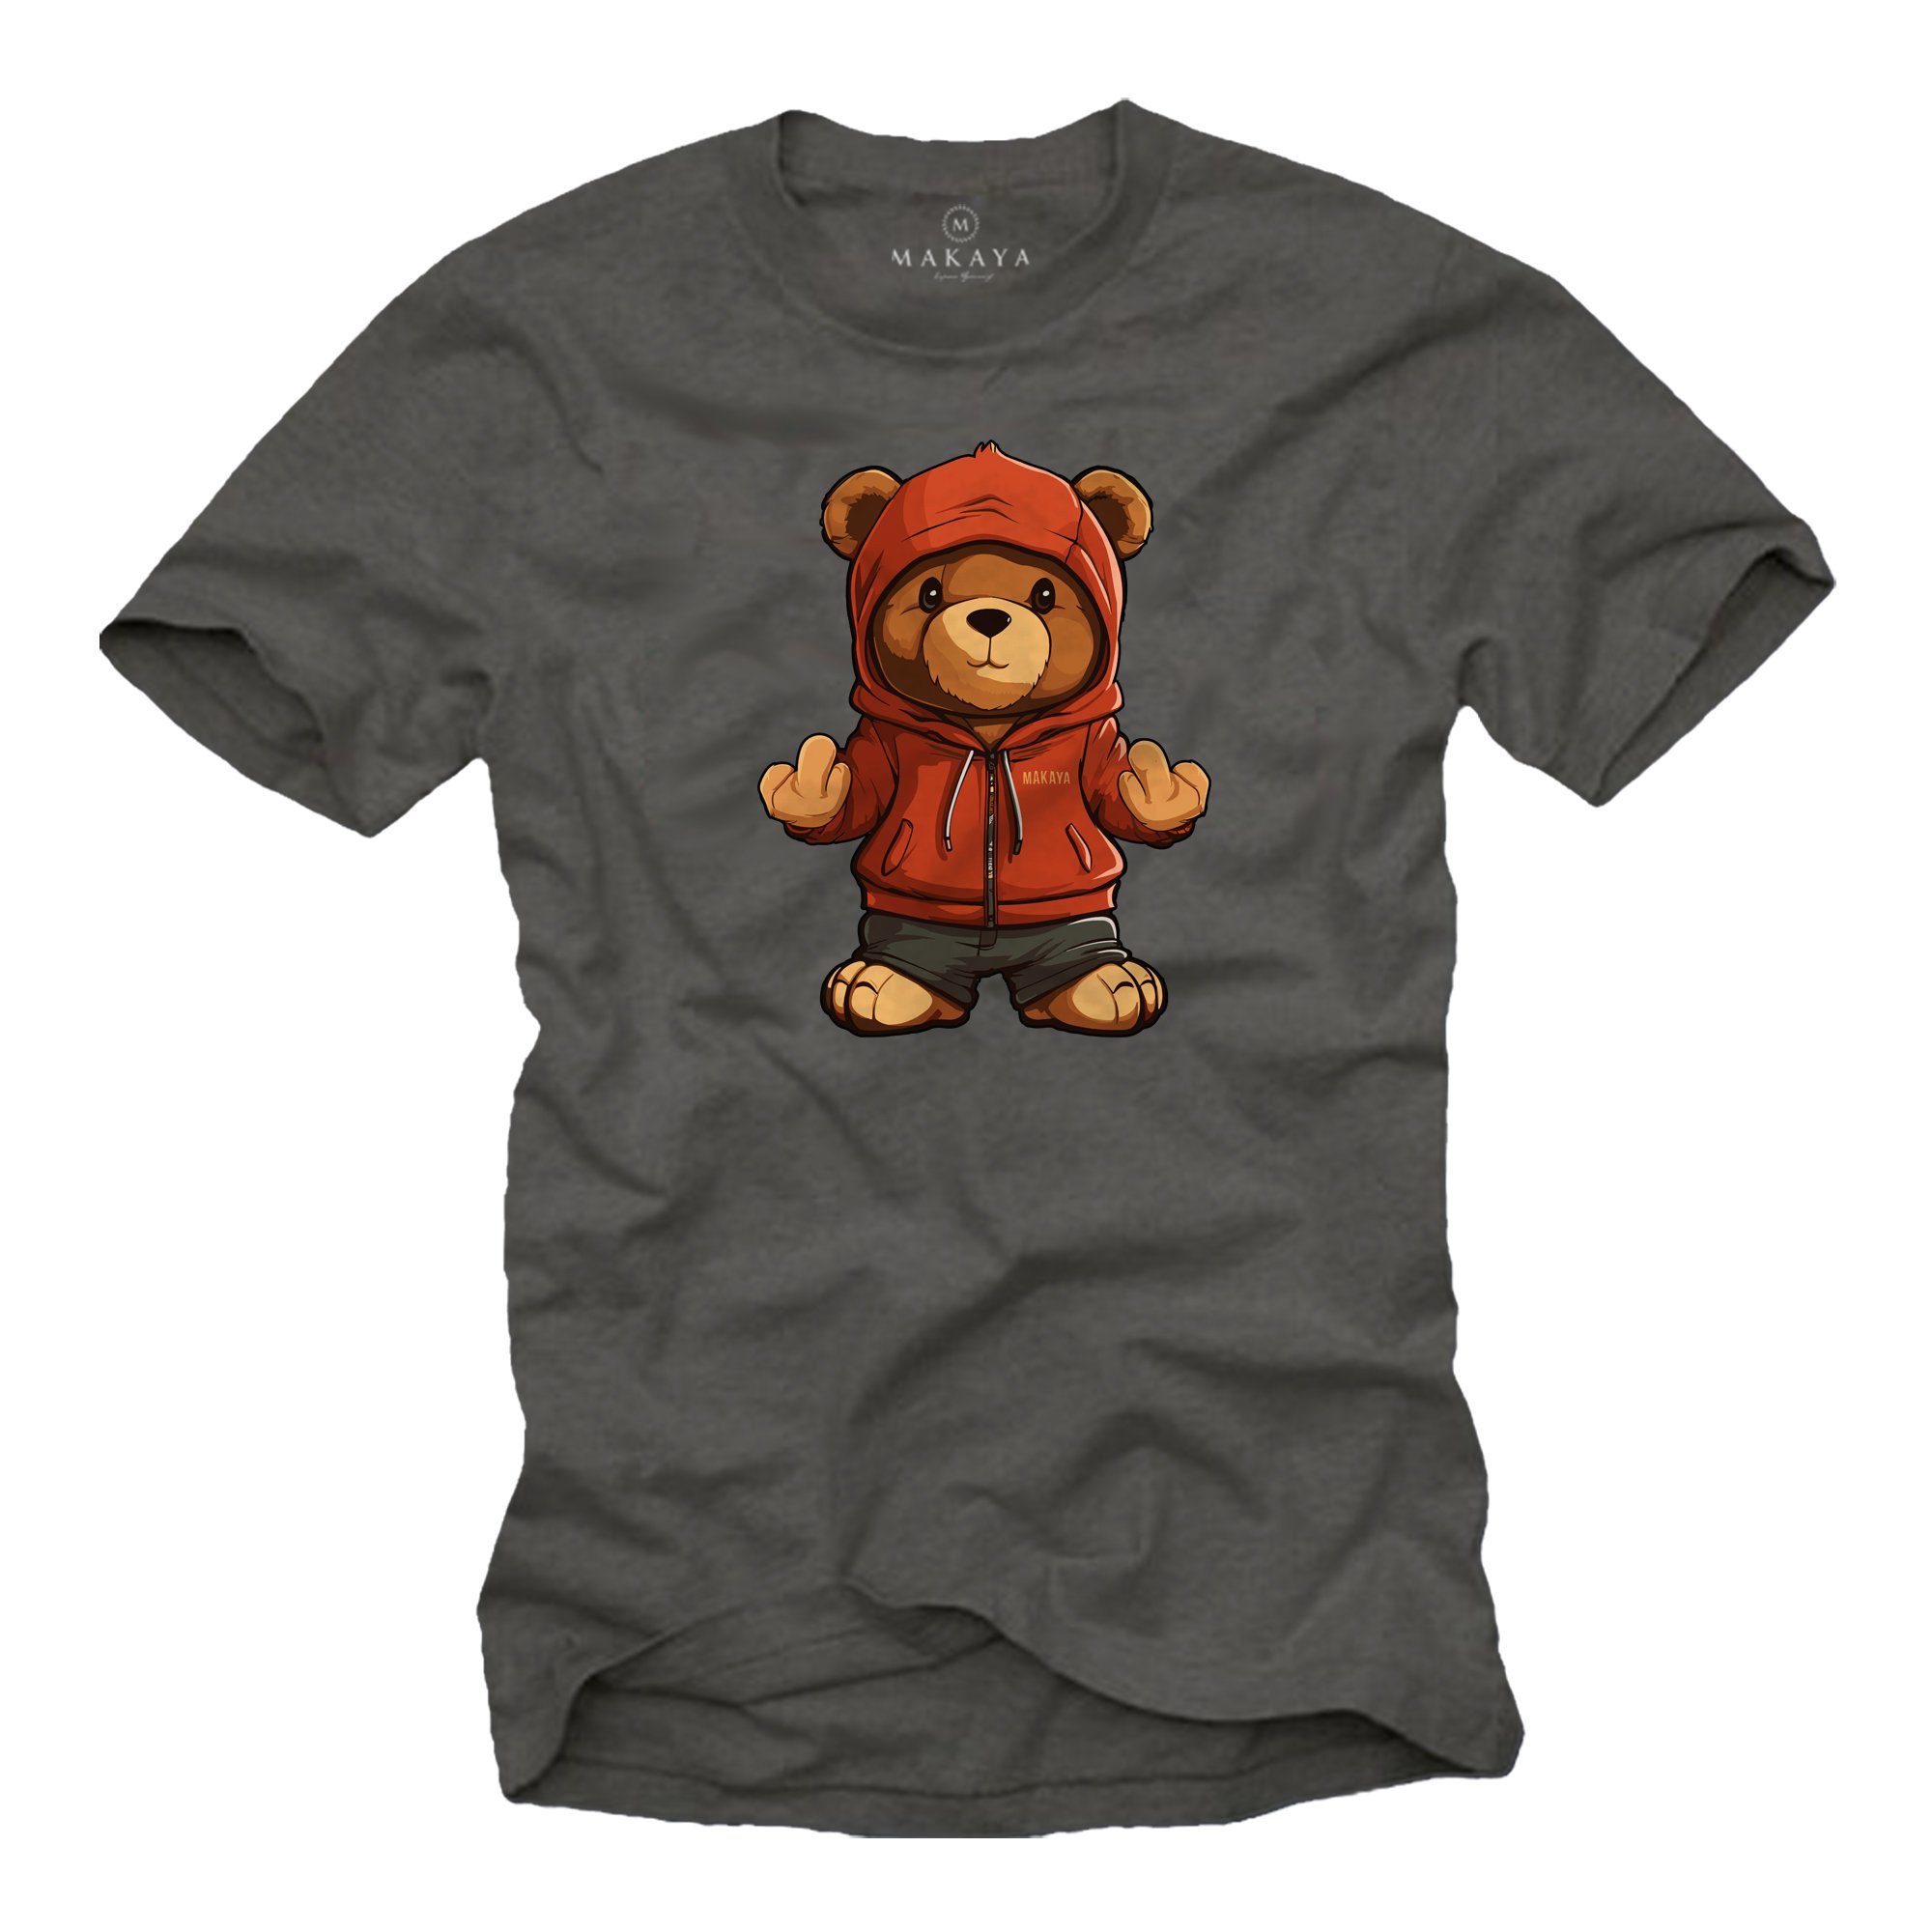 Beliebt und ausverkauft MAKAYA T-Shirt mit Teddy Herren Print, Teenager Jungen Teddybär Grau Jungs Jugendliche Aufruck